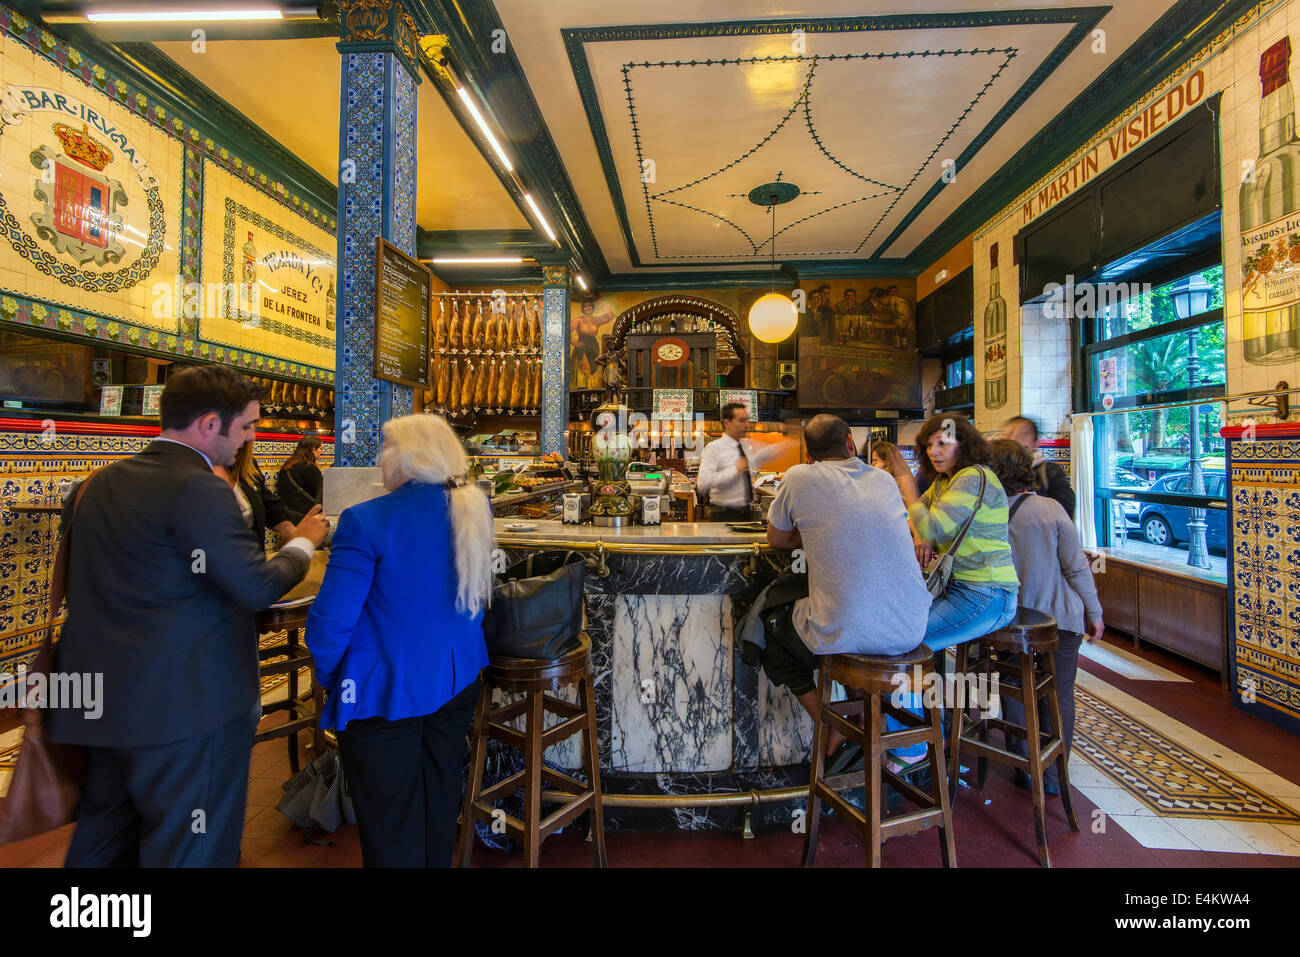 Intérieur de l'historique Café Iruna fondé en 1903, Bilbao, Pays Basque, Espagne Banque D'Images